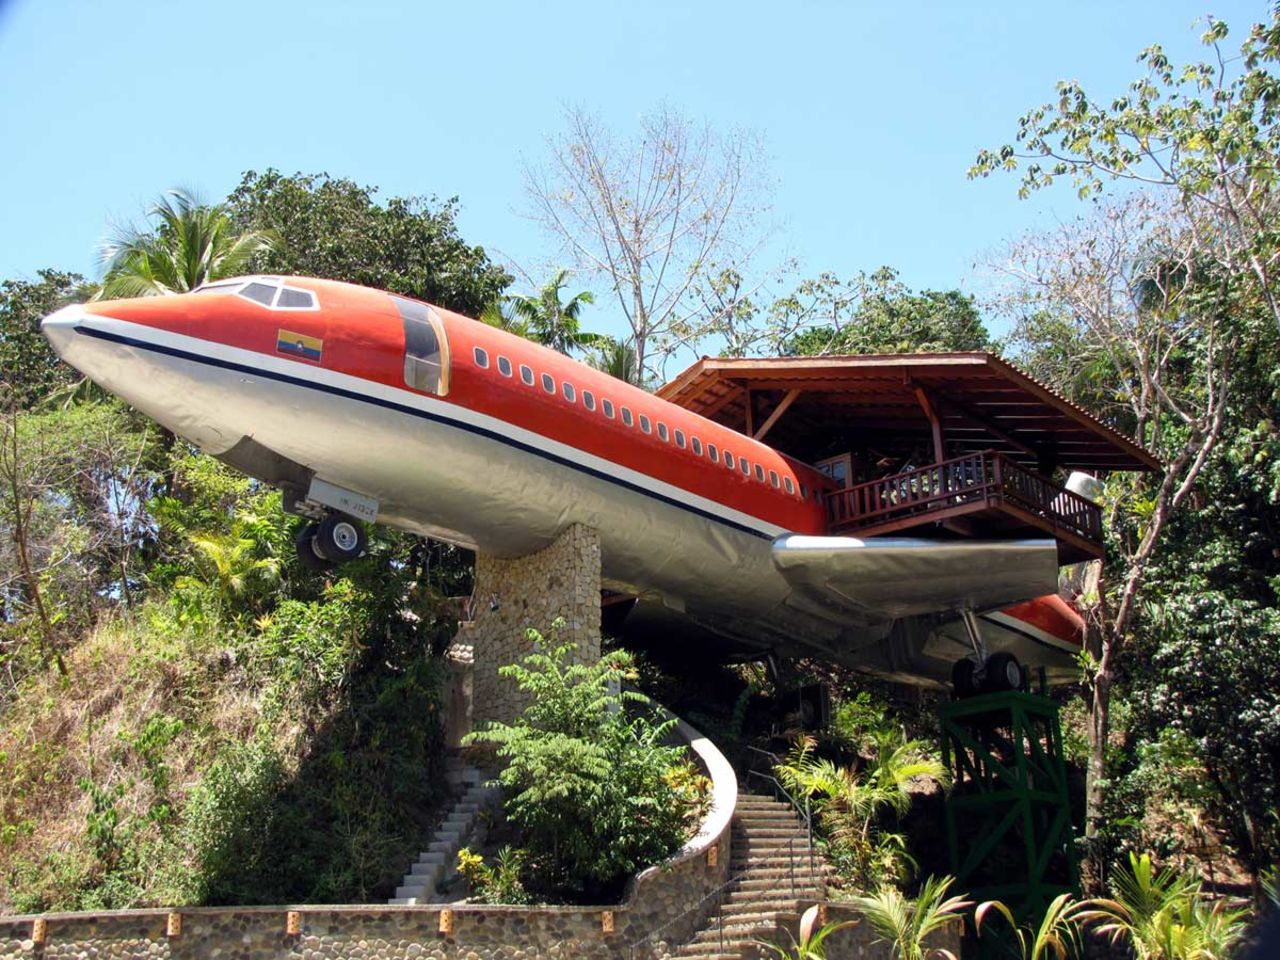 Esta suite en el hotel en Costa Verde de Costa Rica fue tiempo atrás un Boeing 727. Por 250 $ la noche (500 en temporada alta) puedes dormir junto a las playas tropicales en un avión que ya no vuela.